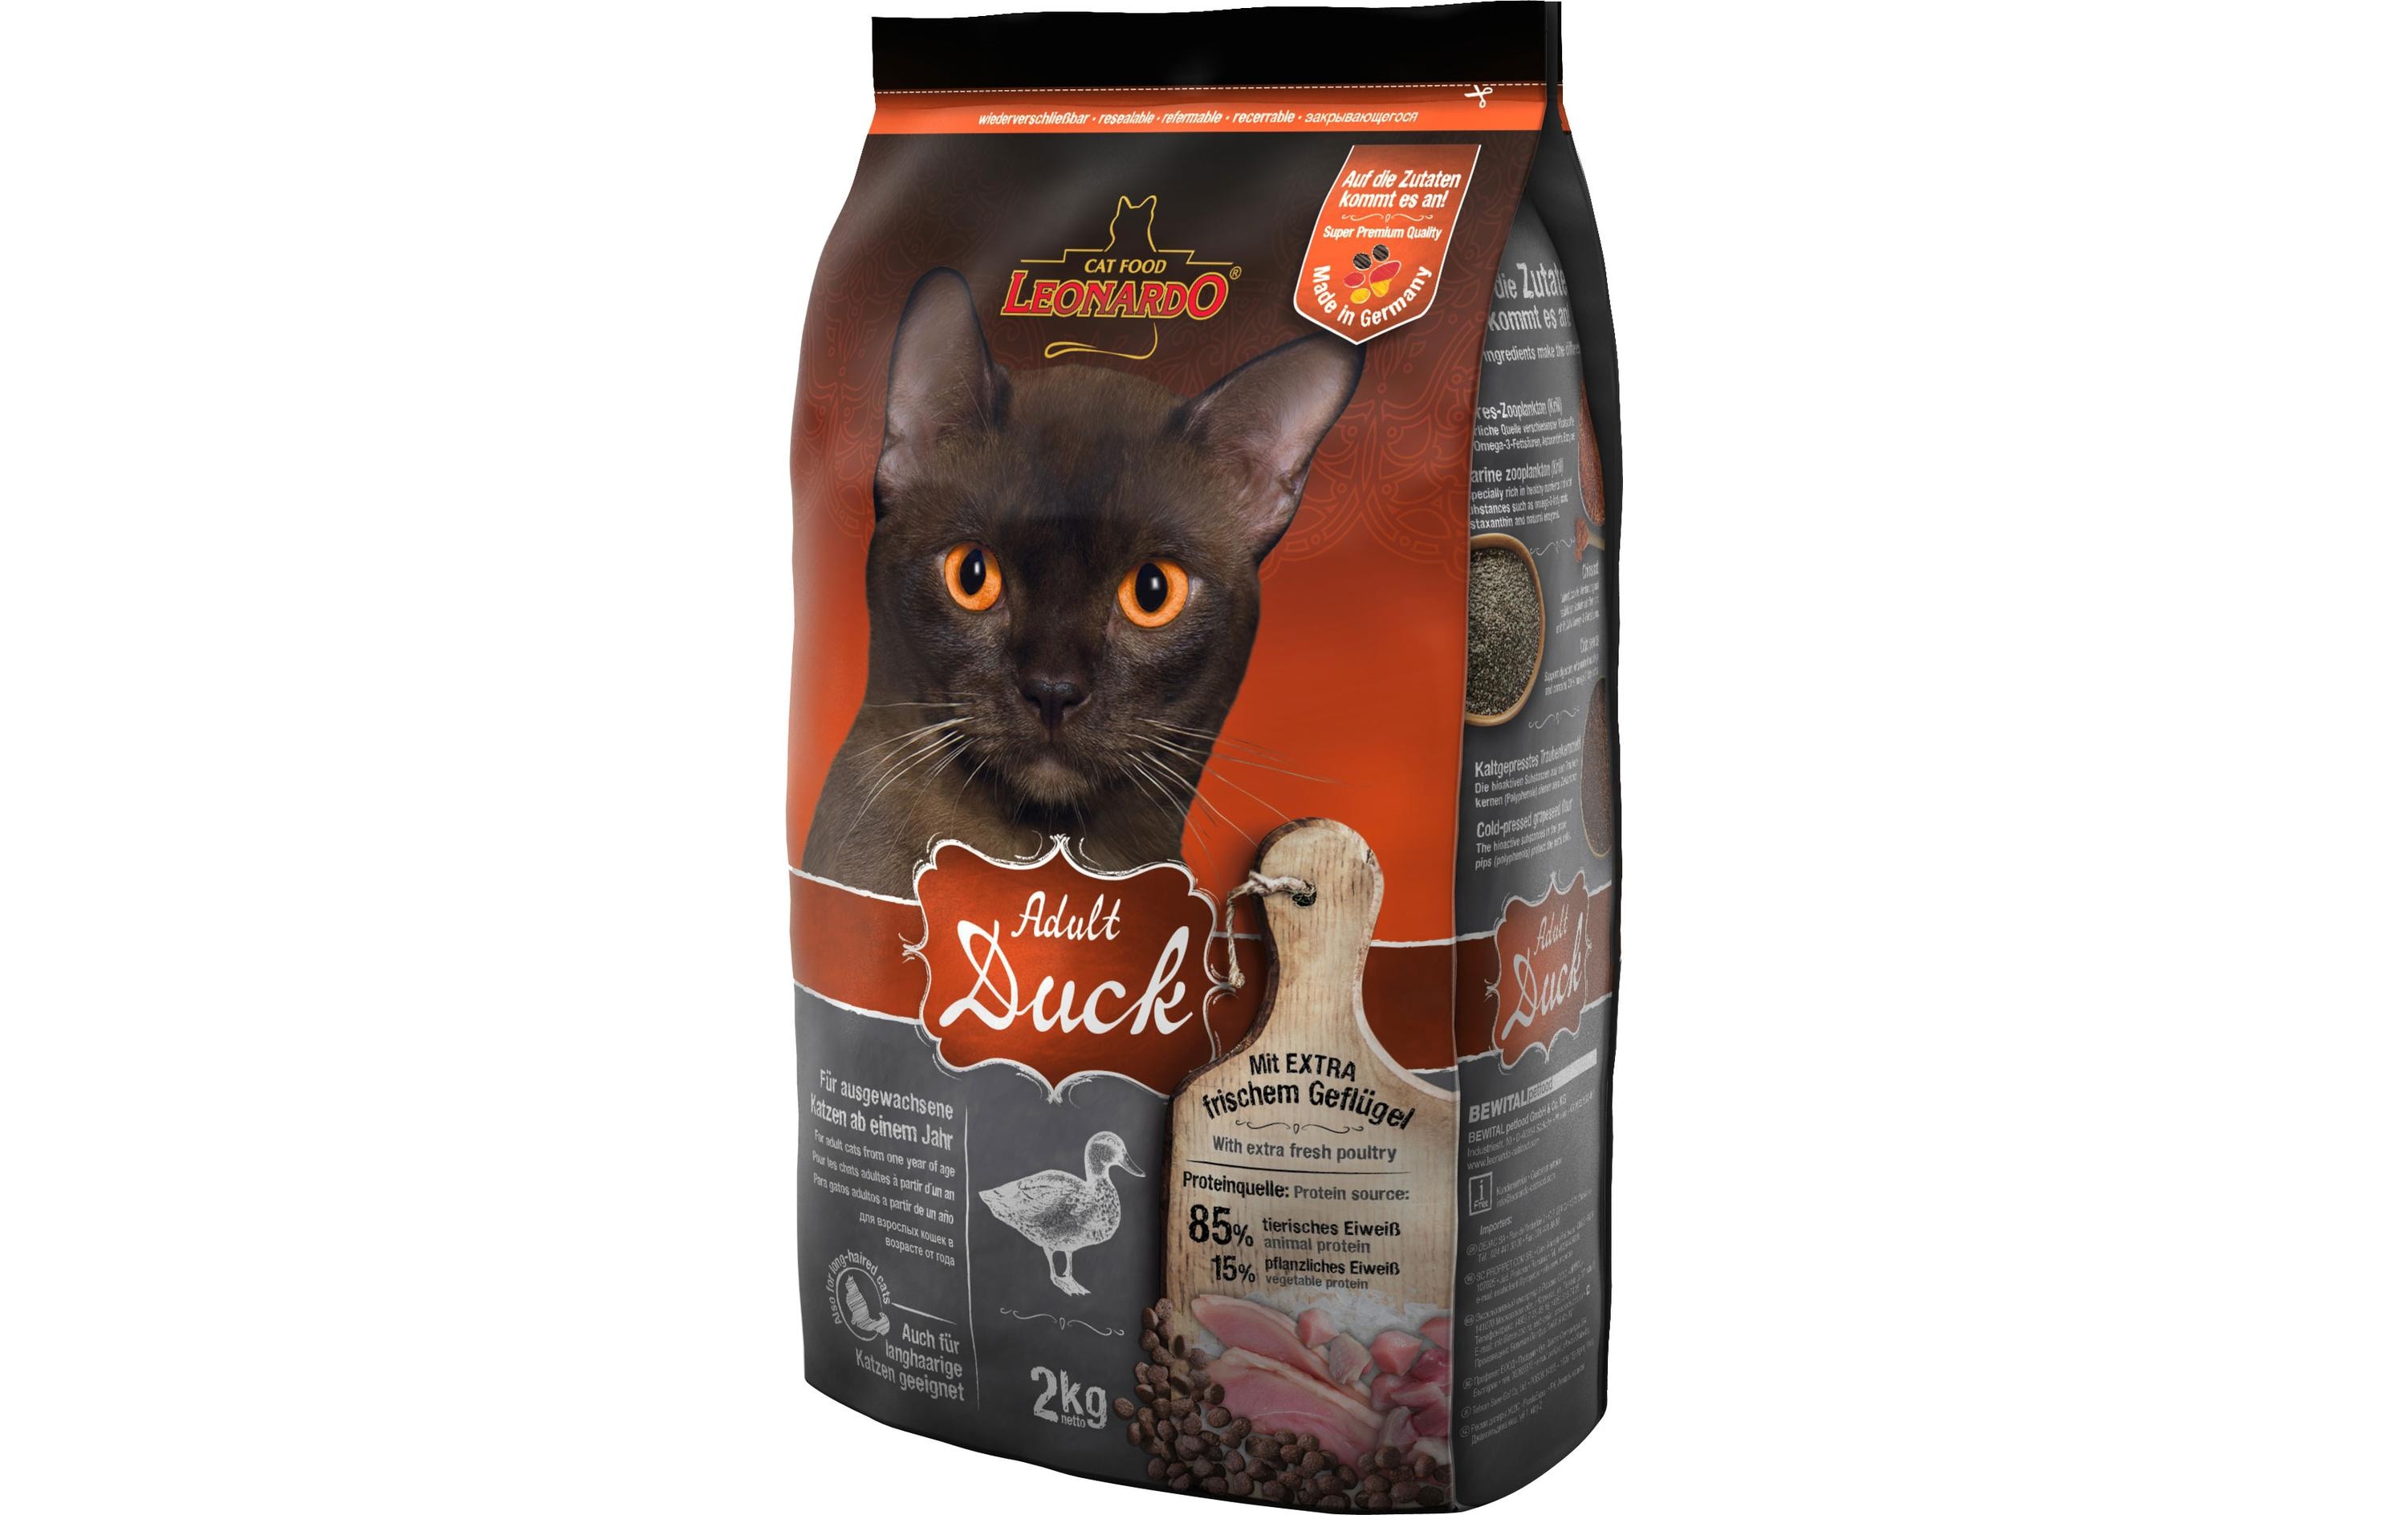 Leonardo Cat Food Trockenfutter Adult Ente, 2 kg